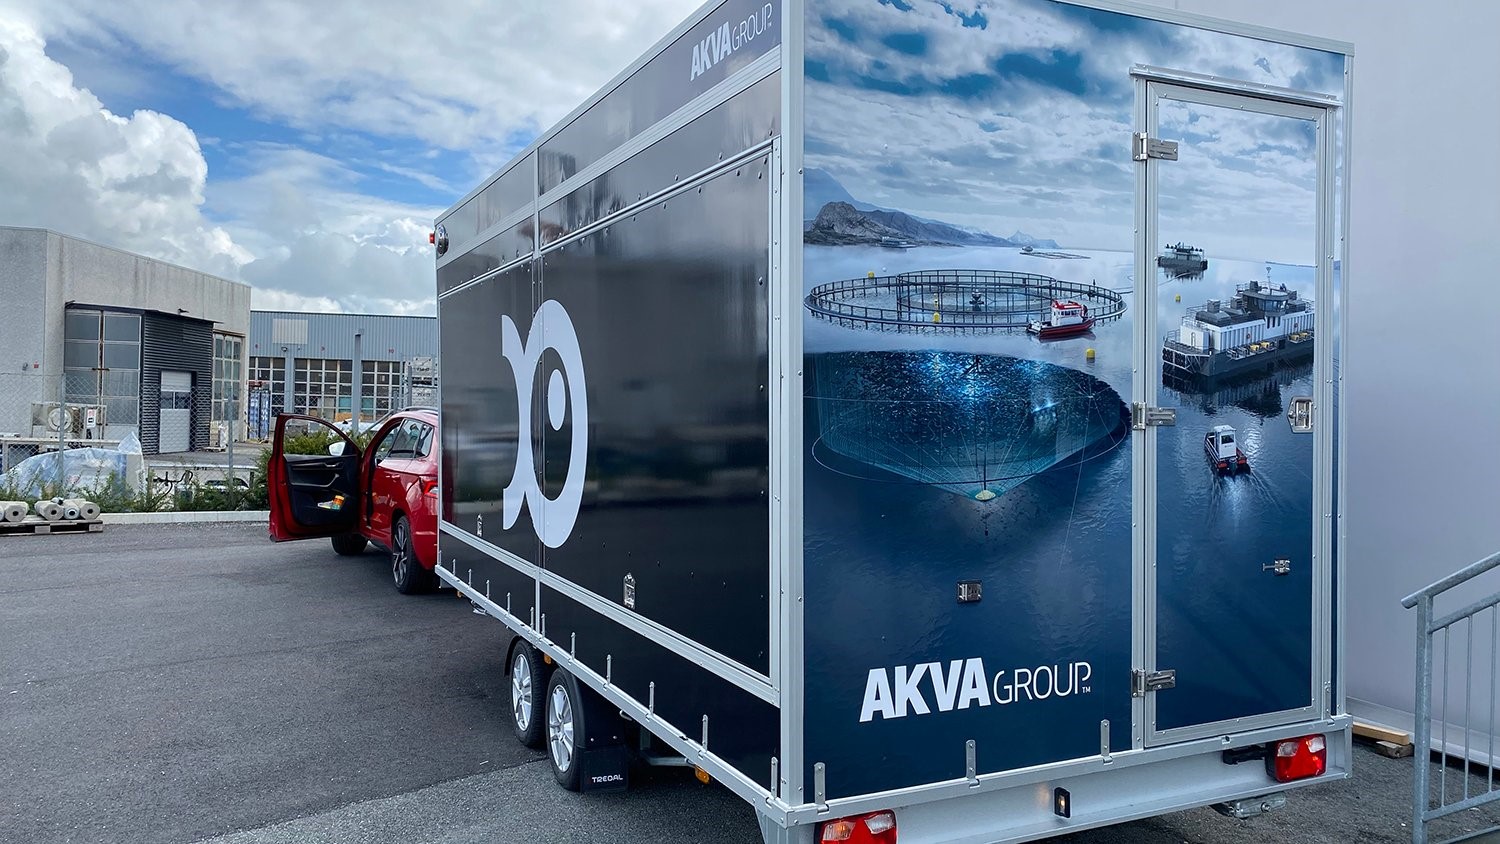 Inédito stand rodante: El grupo AKVA amplía Aqua Nor por al menos un año